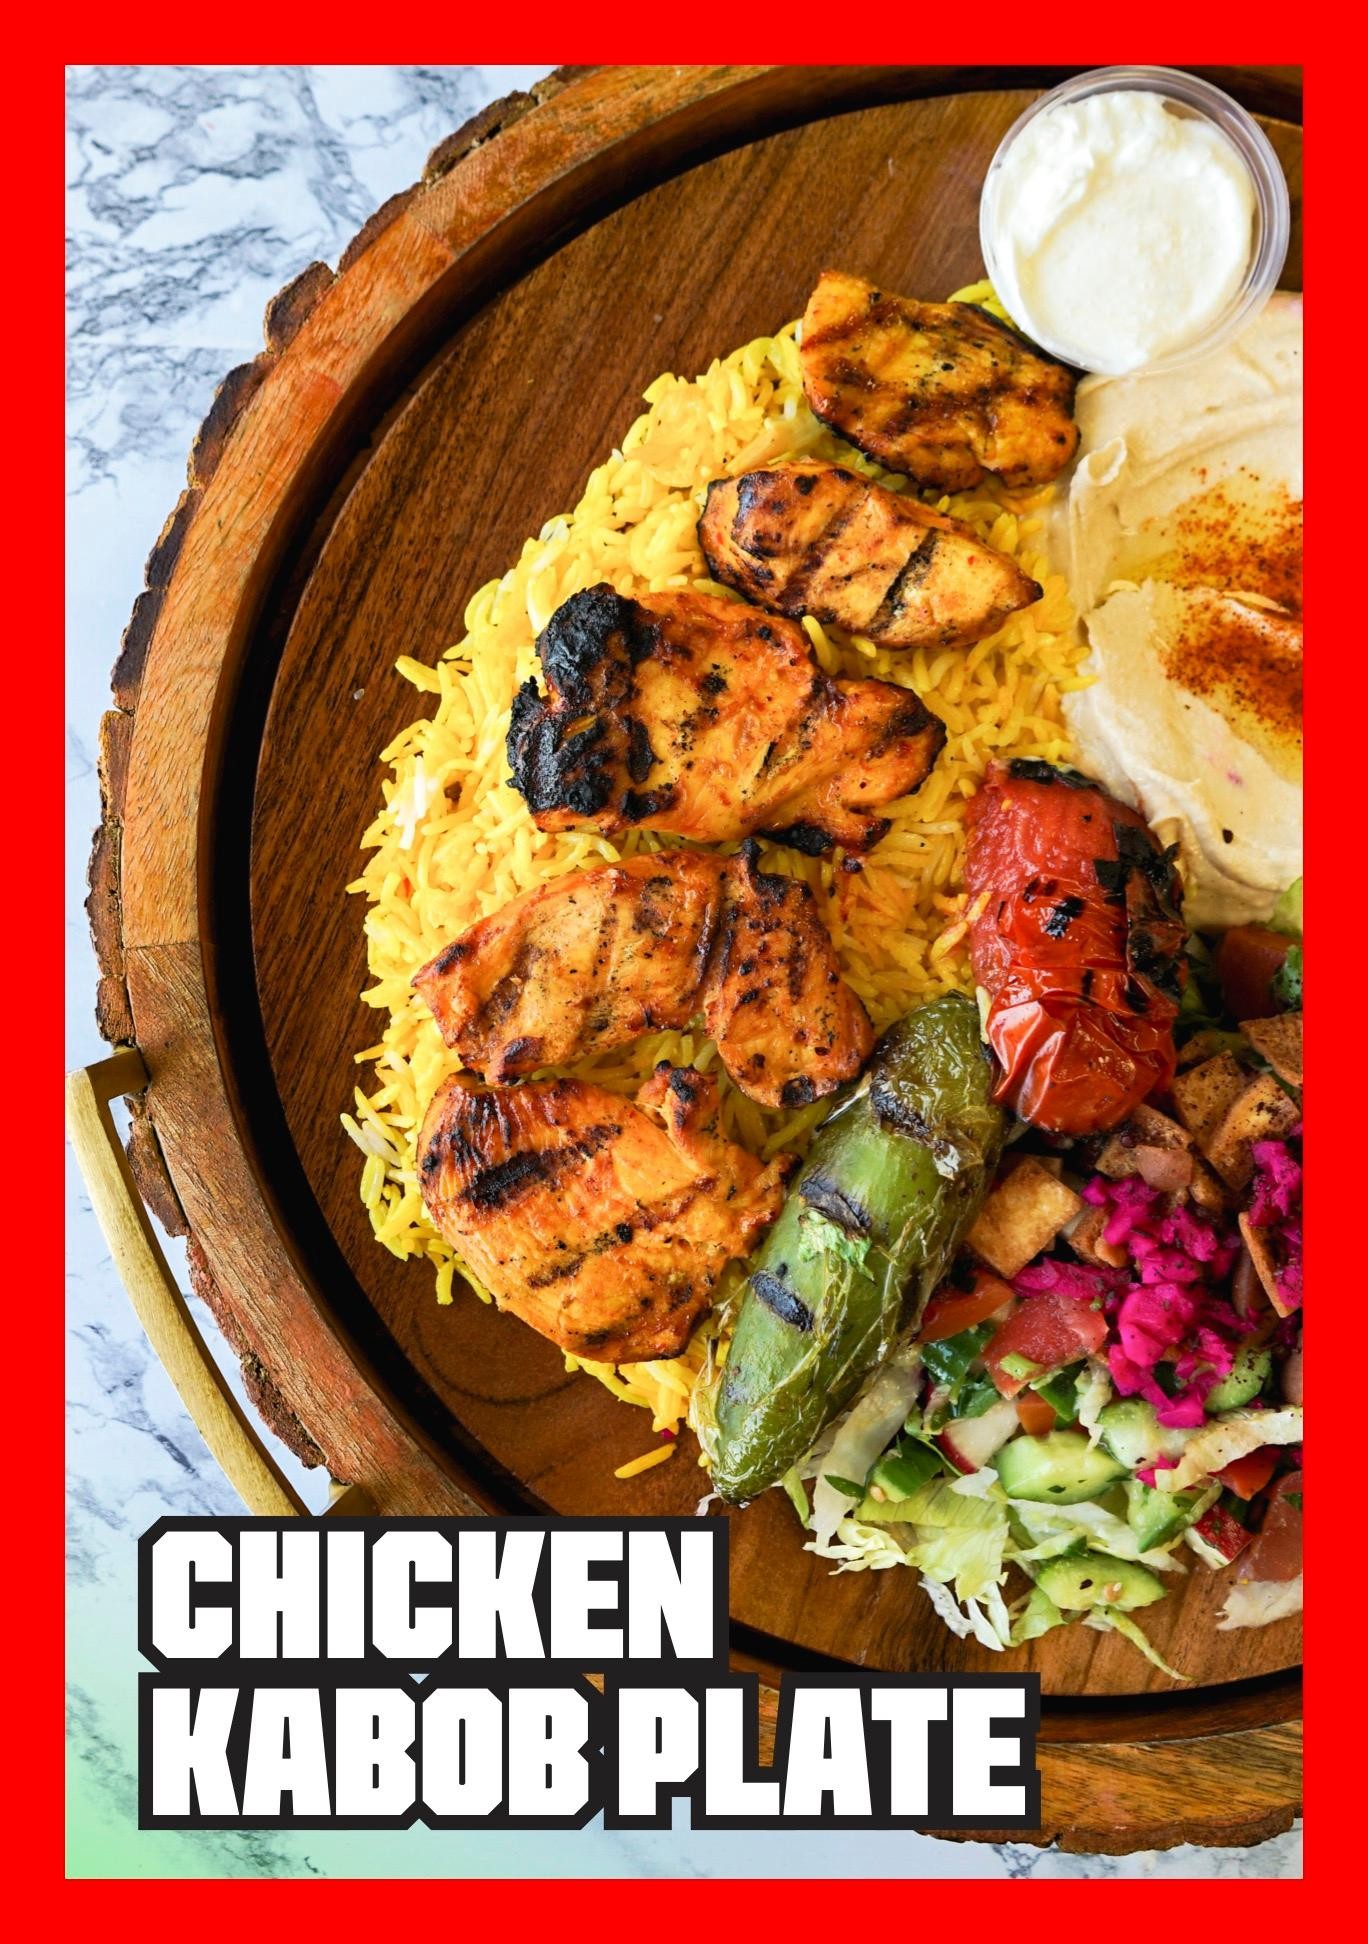 Chicken kabob plate